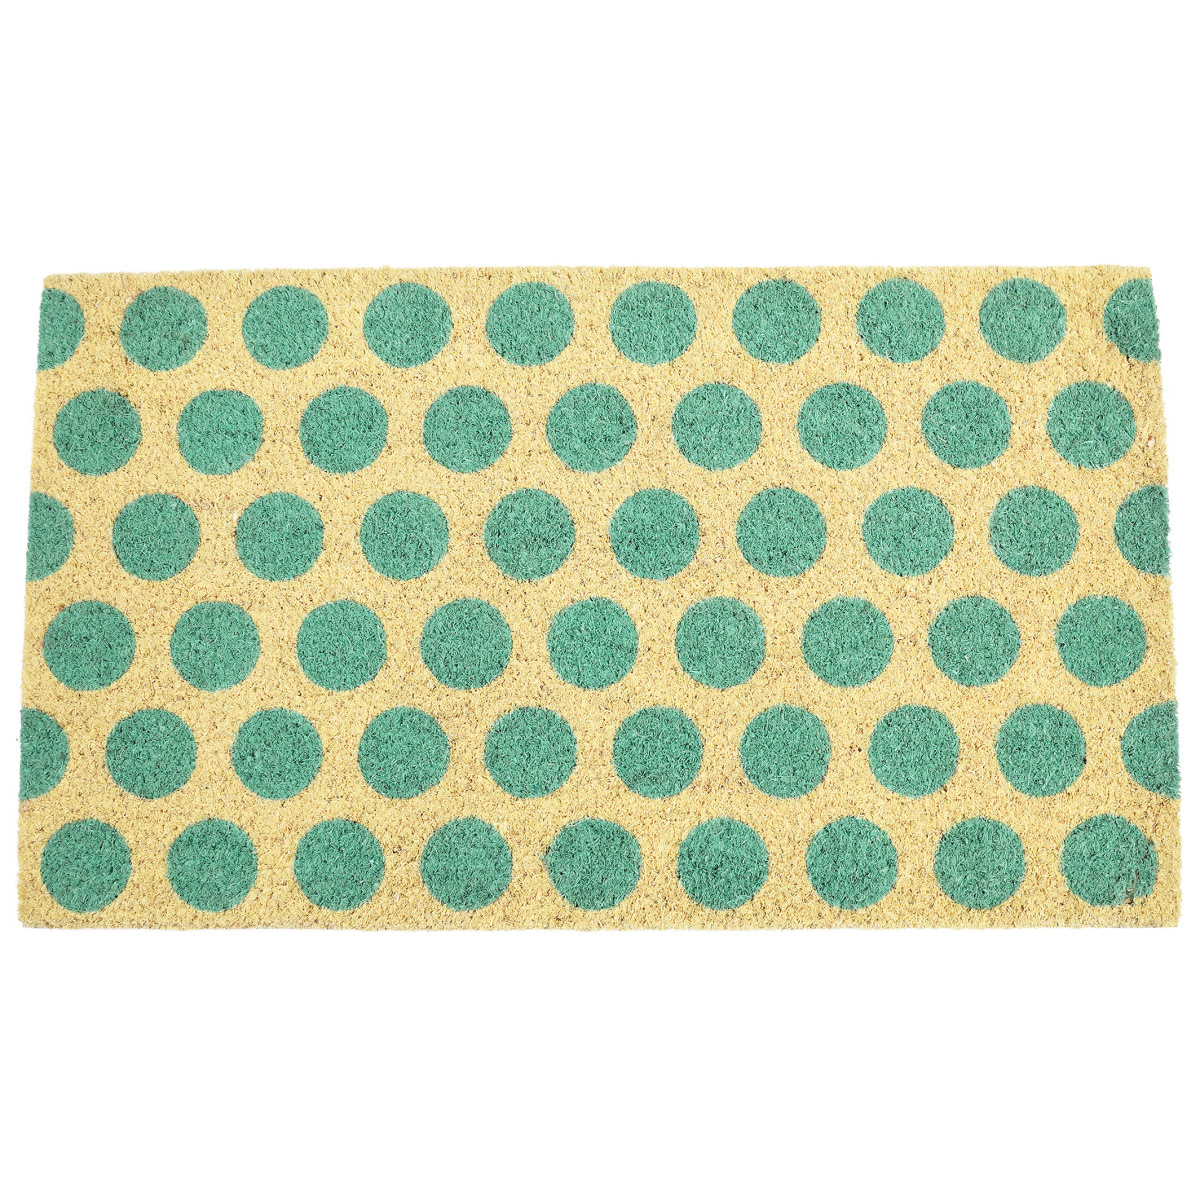 Rex London coconut mat - dots, turquoise